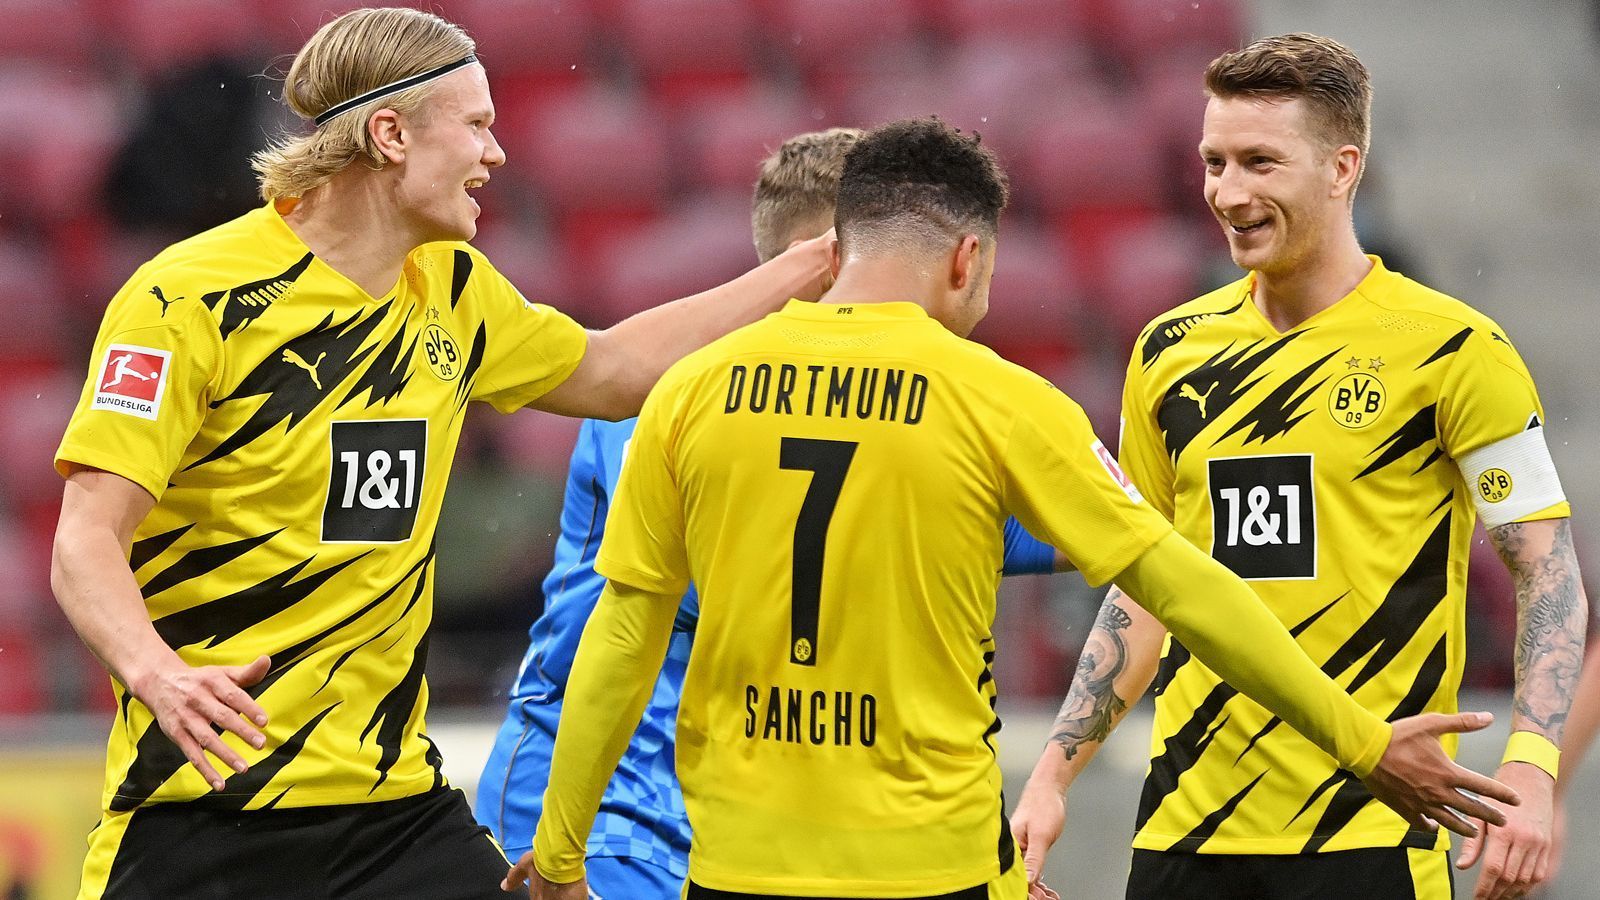 
                <strong>Borussia Dortmund siegt sich in die Champions League</strong><br>
                Die Aufholjagd der vergangenen Wochen hat Borussia Dortmund am 33. Spieltag gekrönt: Durch einen 3:1 (2:0)-Sieg beim FSV Mainz 05 brachte der BVB die Qualifikation für die Champions League unter Dach und Fach. Zwischenzeitlich lag der BVB elf Punkte hinter den Königsklassen-Plätzen, in Mainz gelang dem Team von Trainer Edin Terzic der nunmehr sechste Bundesliga-Sieg in Serie.
              